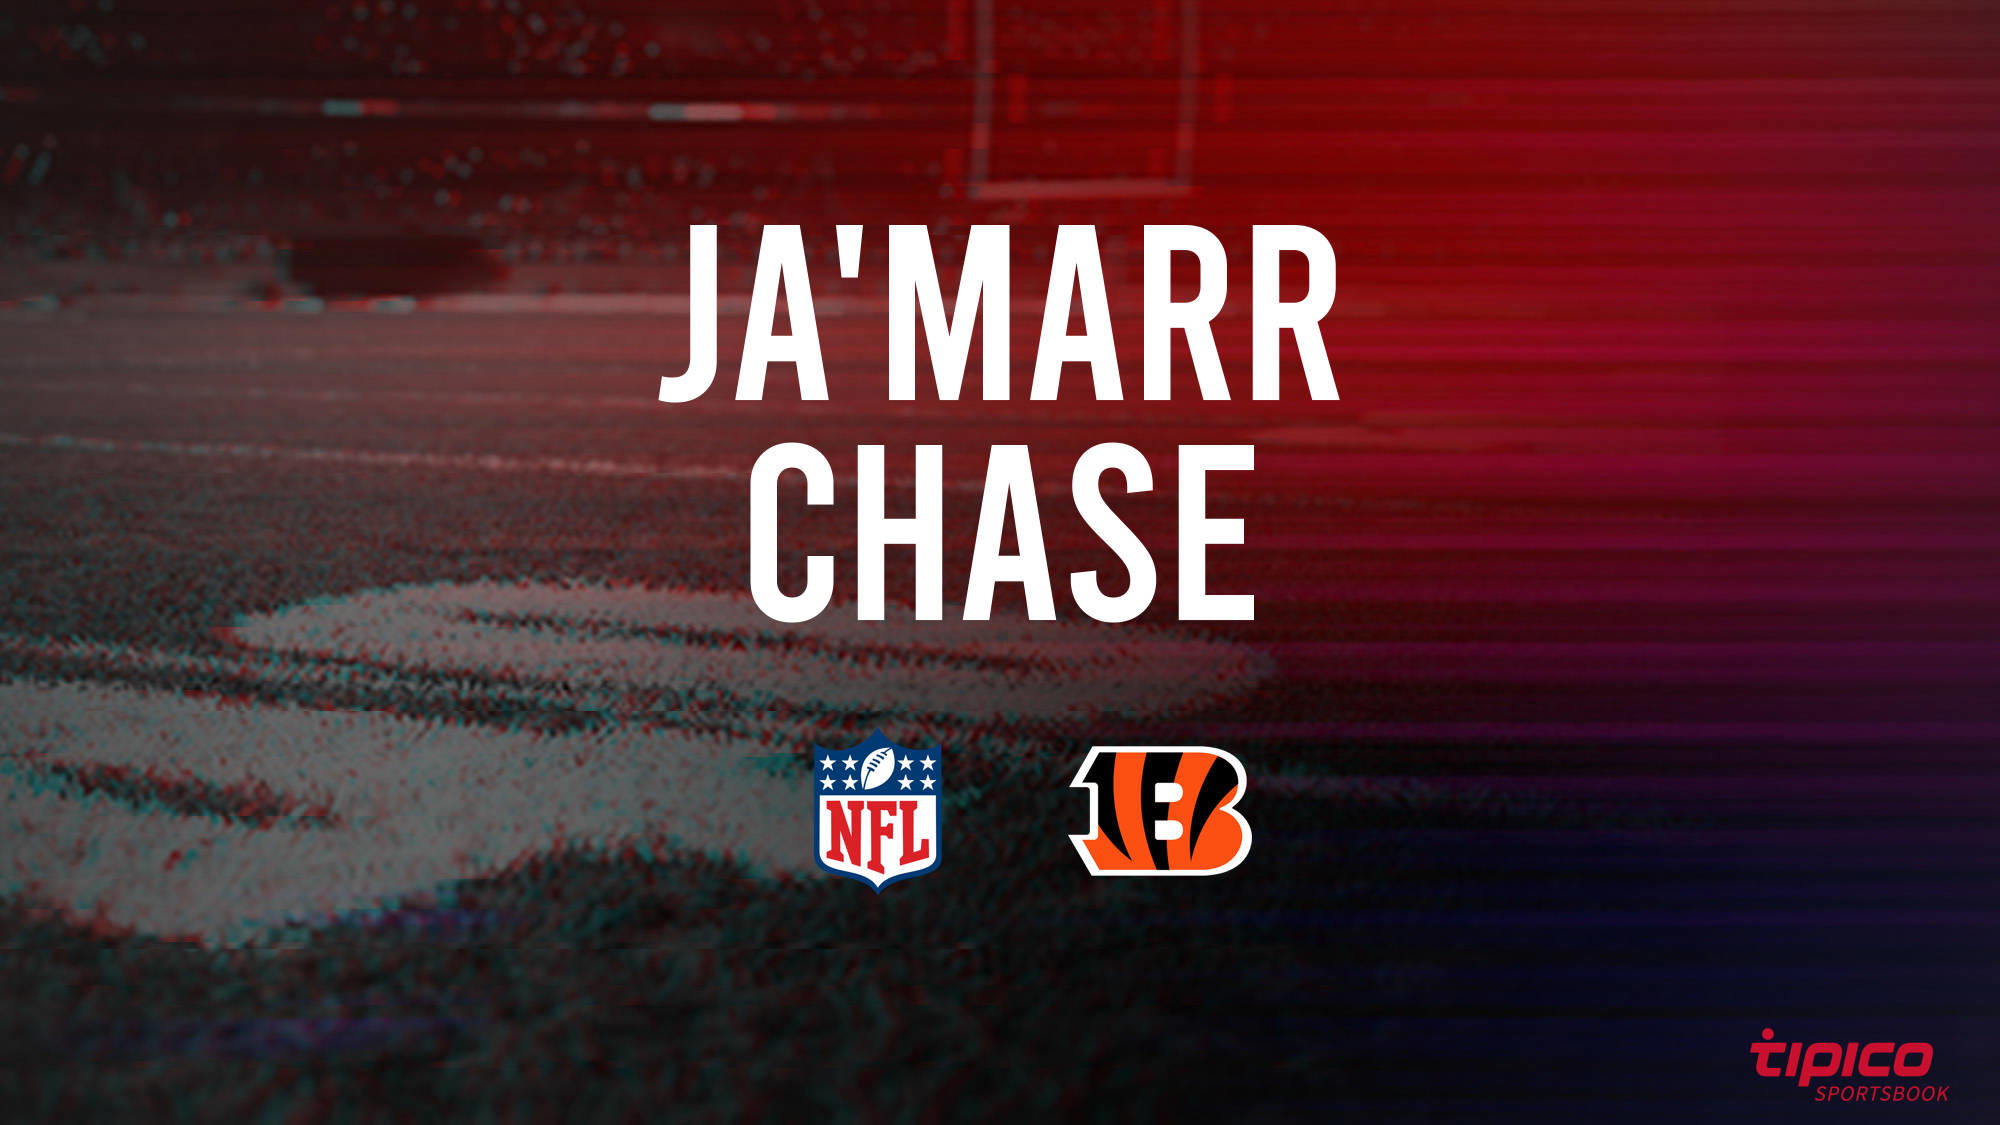 Ja'Marr Chase vs. Baltimore Ravens